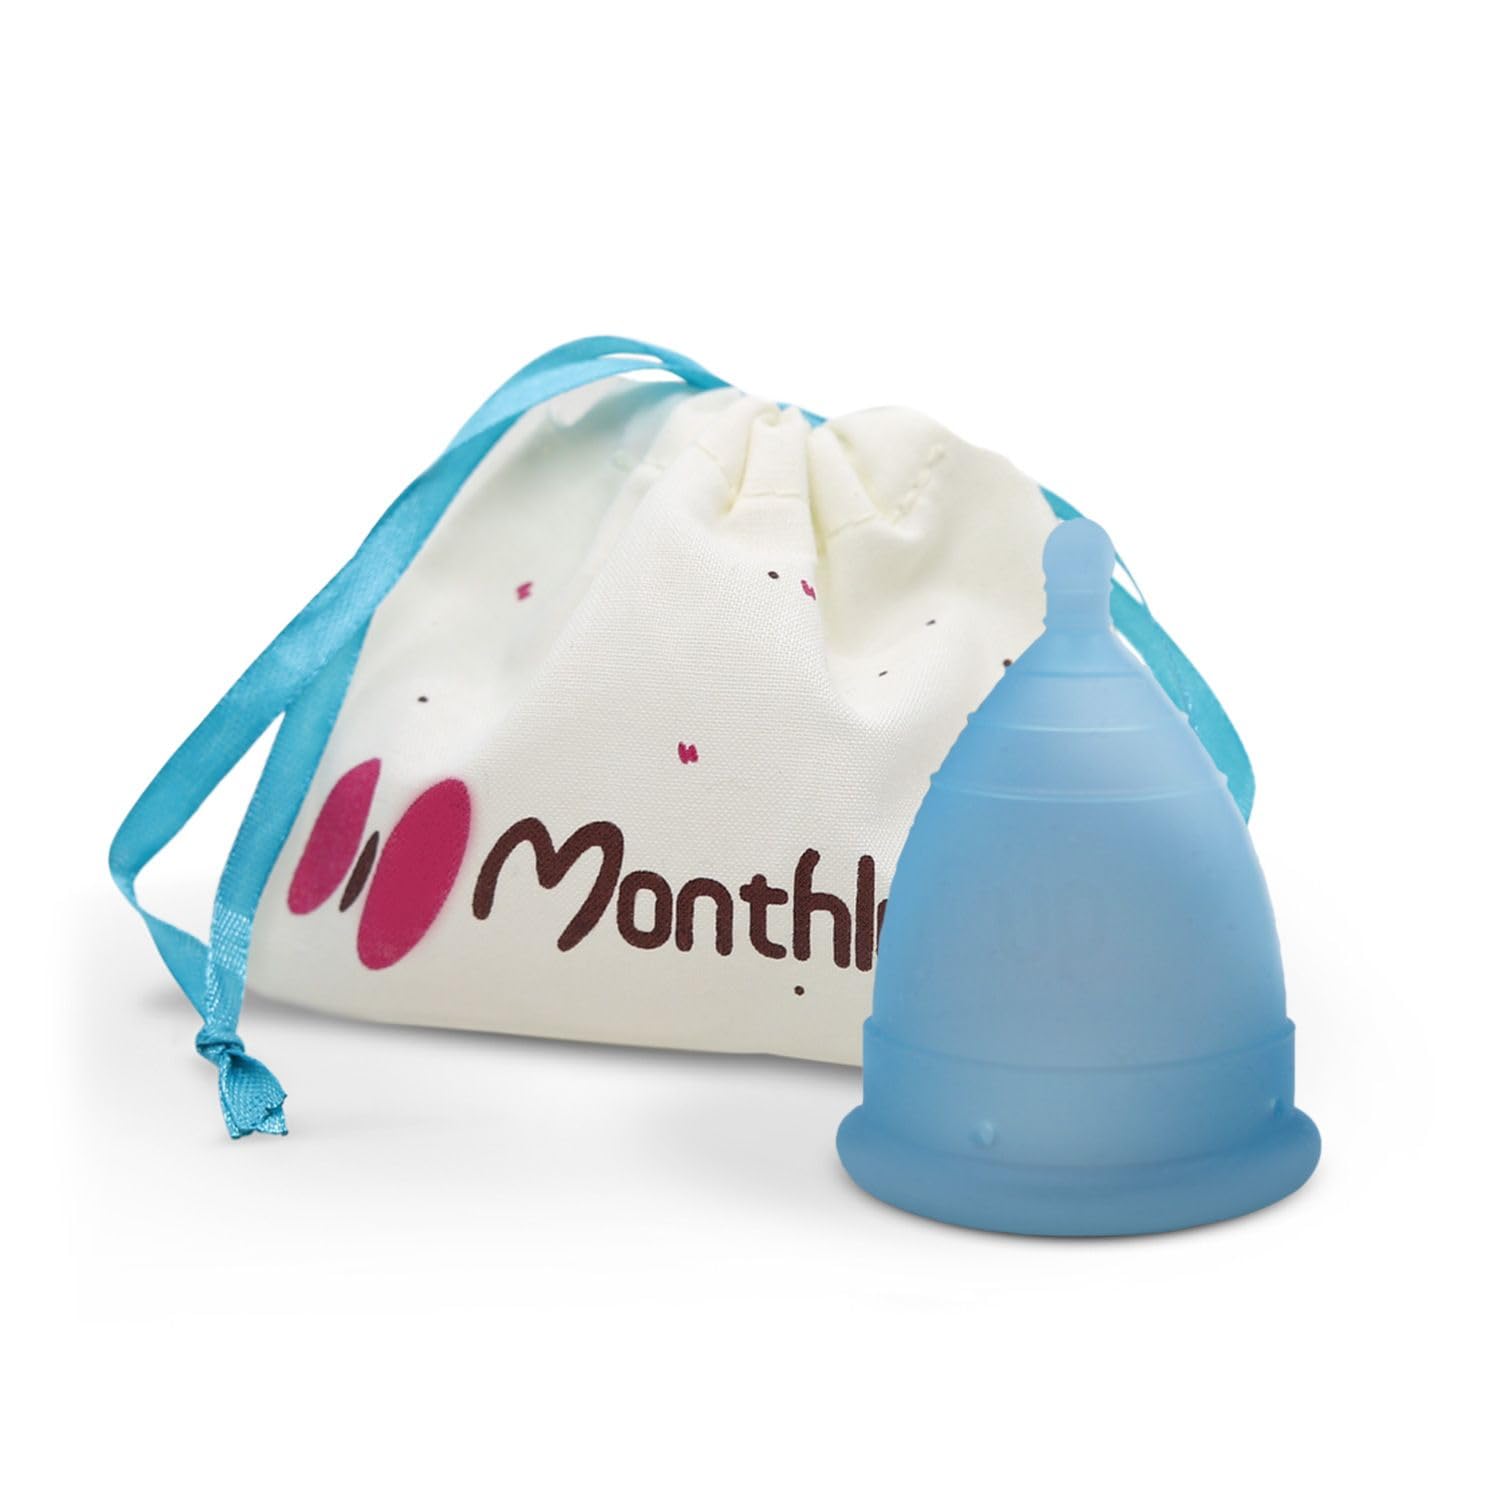 MonthlyCup - Menstruationstasse Made in Sweden | Gr. Plus | Für starke Zyklen | Wiederverwendbarer | 100% Medizinisches Silikon